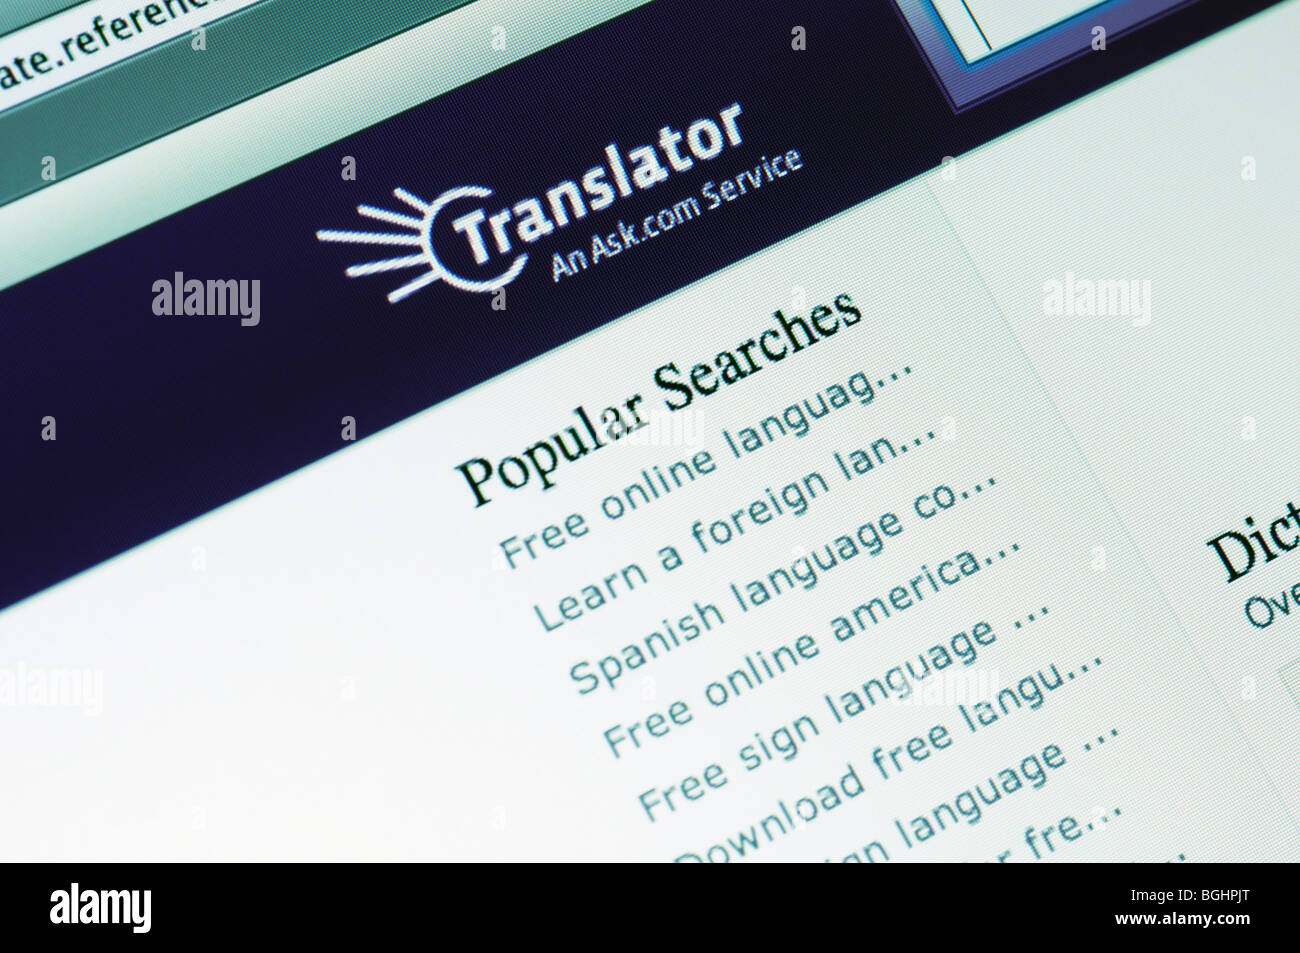 Translator website Stock Photo